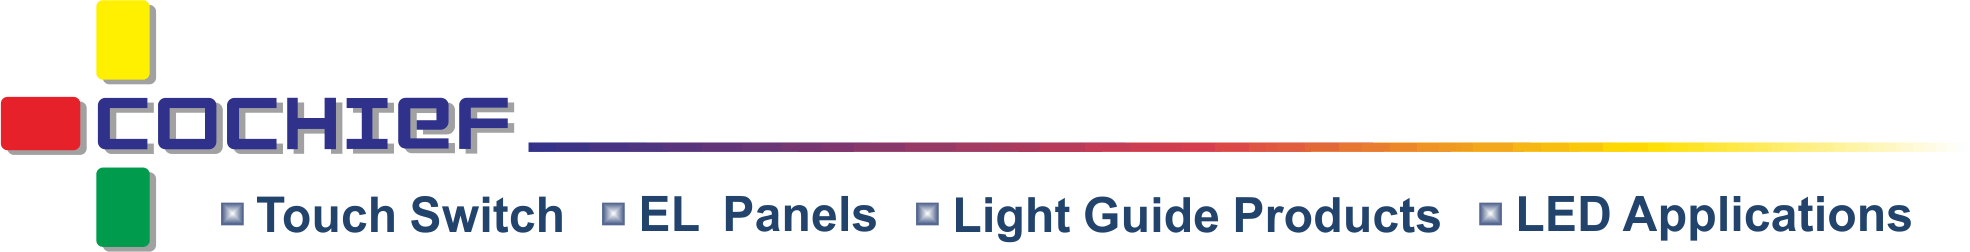 皓智企業股份有限公司 - 電容式智能光效觸控模組、薄型觸控膜、冷光、導光開發設計製造商。